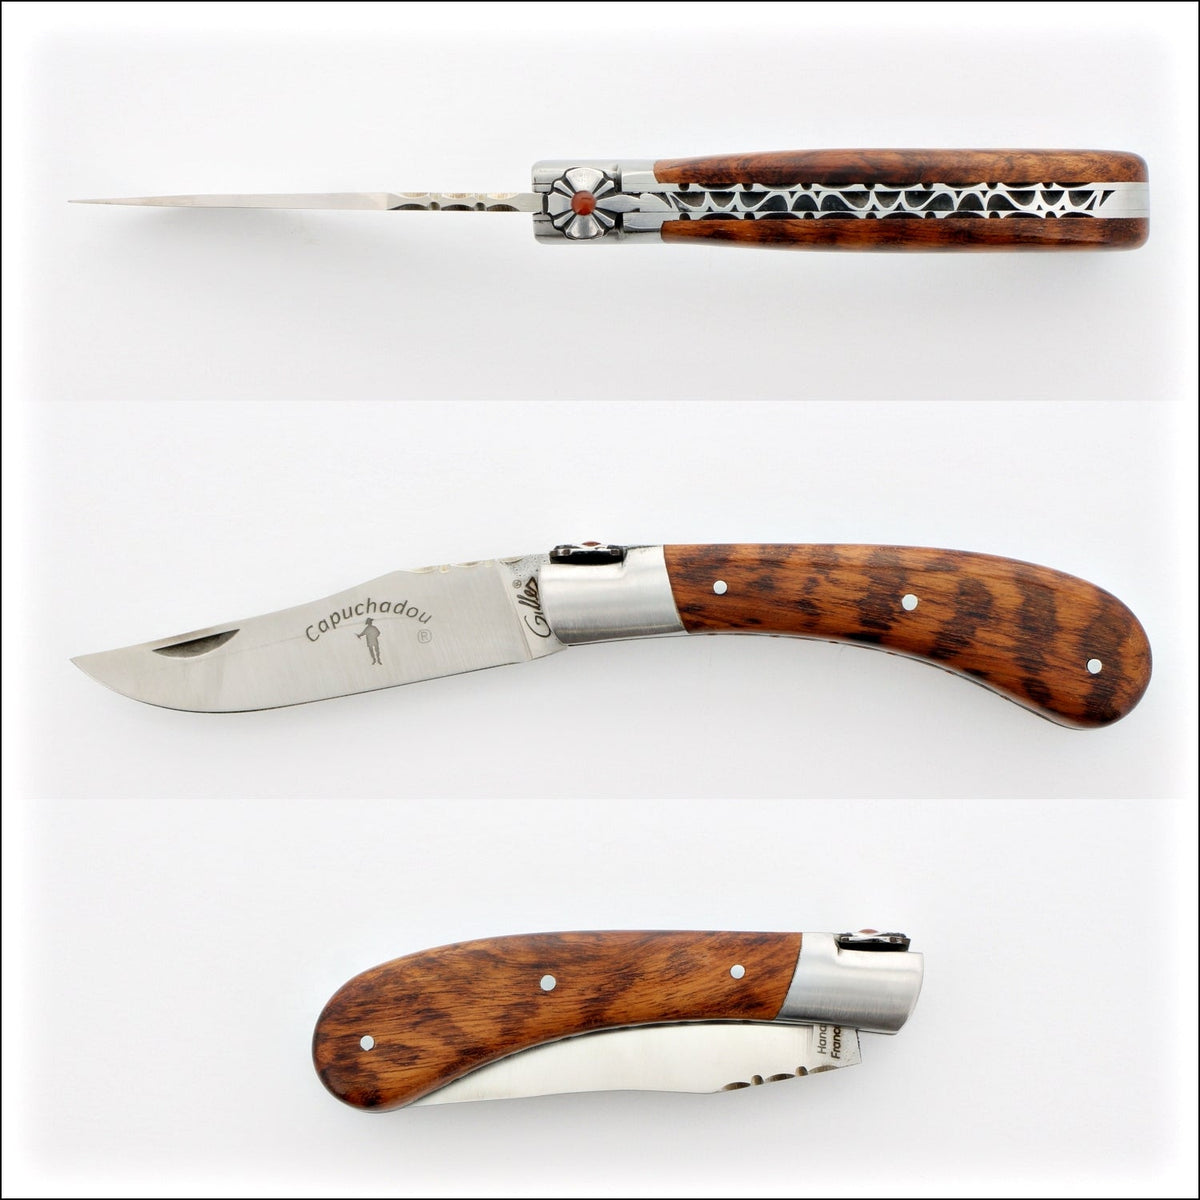 Capuchadou 10 cm Guilloche Folding Knife Amourette